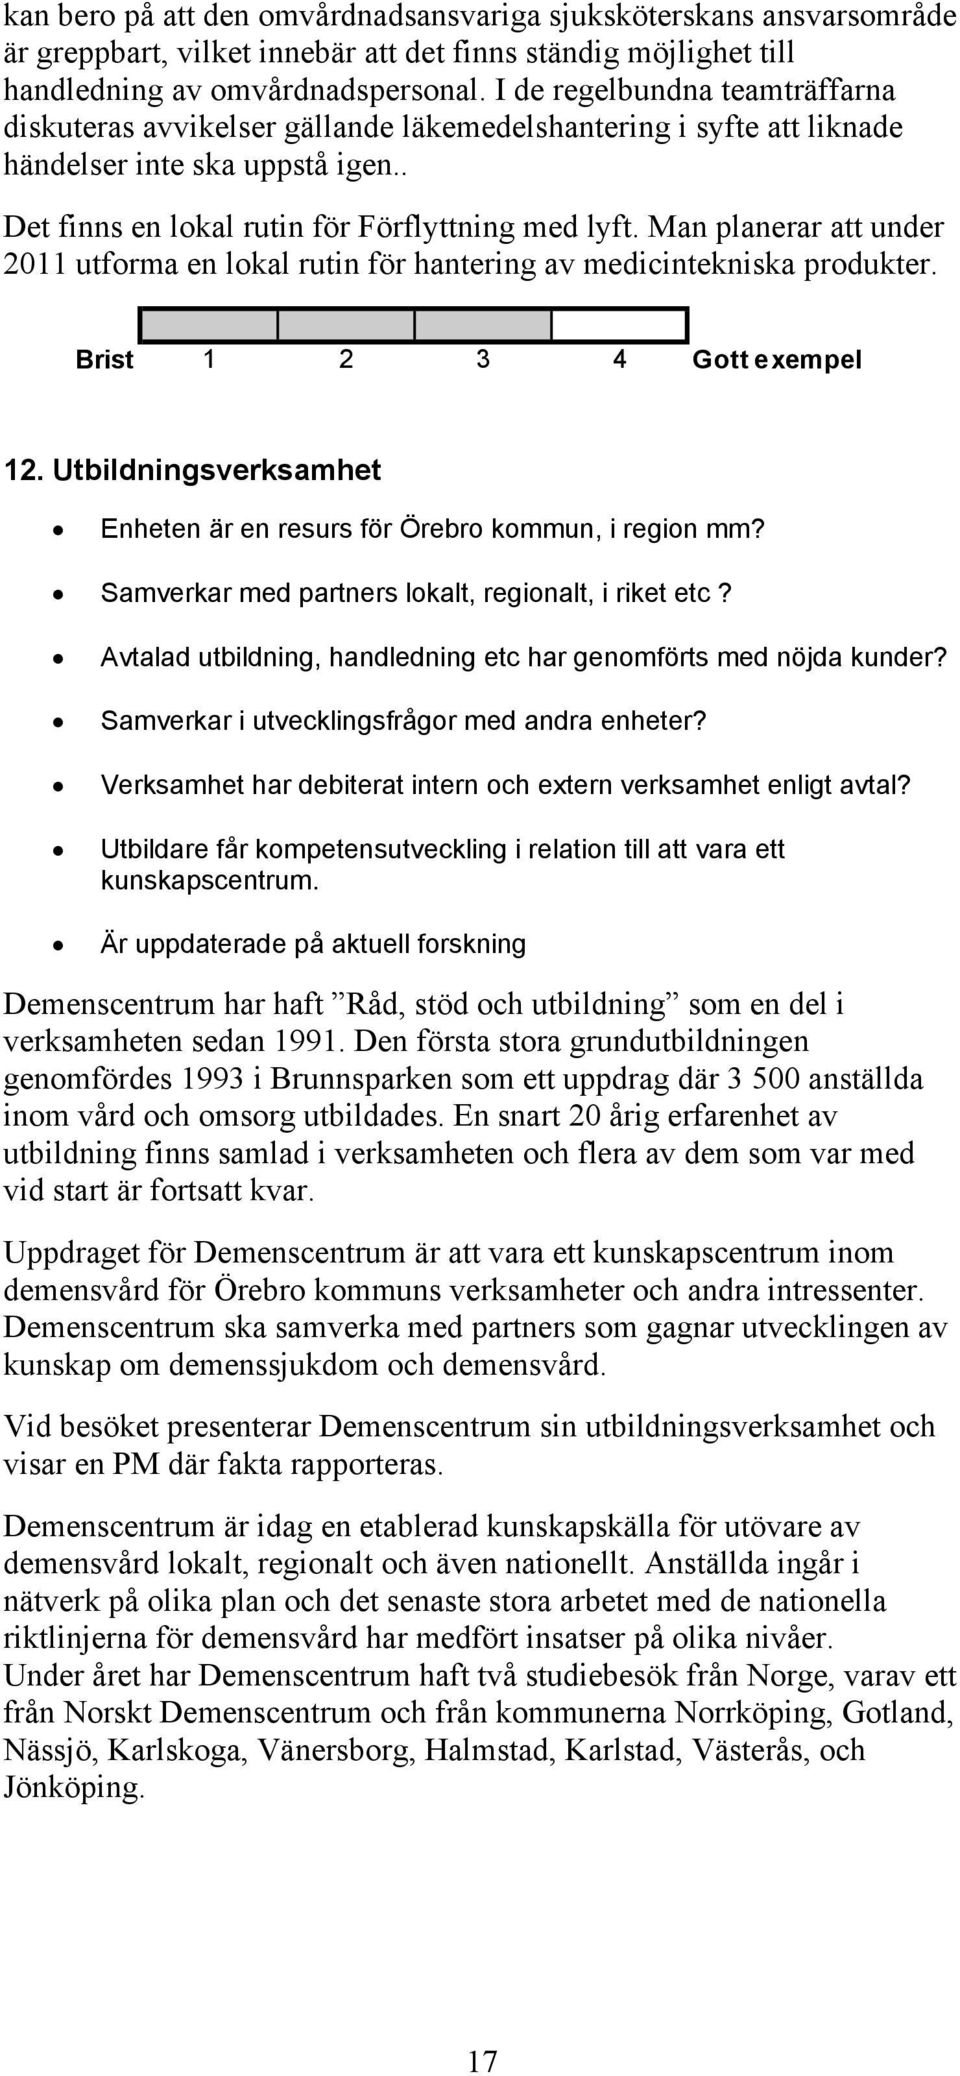 Man planerar att under 2011 utforma en lokal rutin för hantering av medicintekniska produkter. 12. Utbildningsverksamhet Enheten är en resurs för Örebro kommun, i region mm?